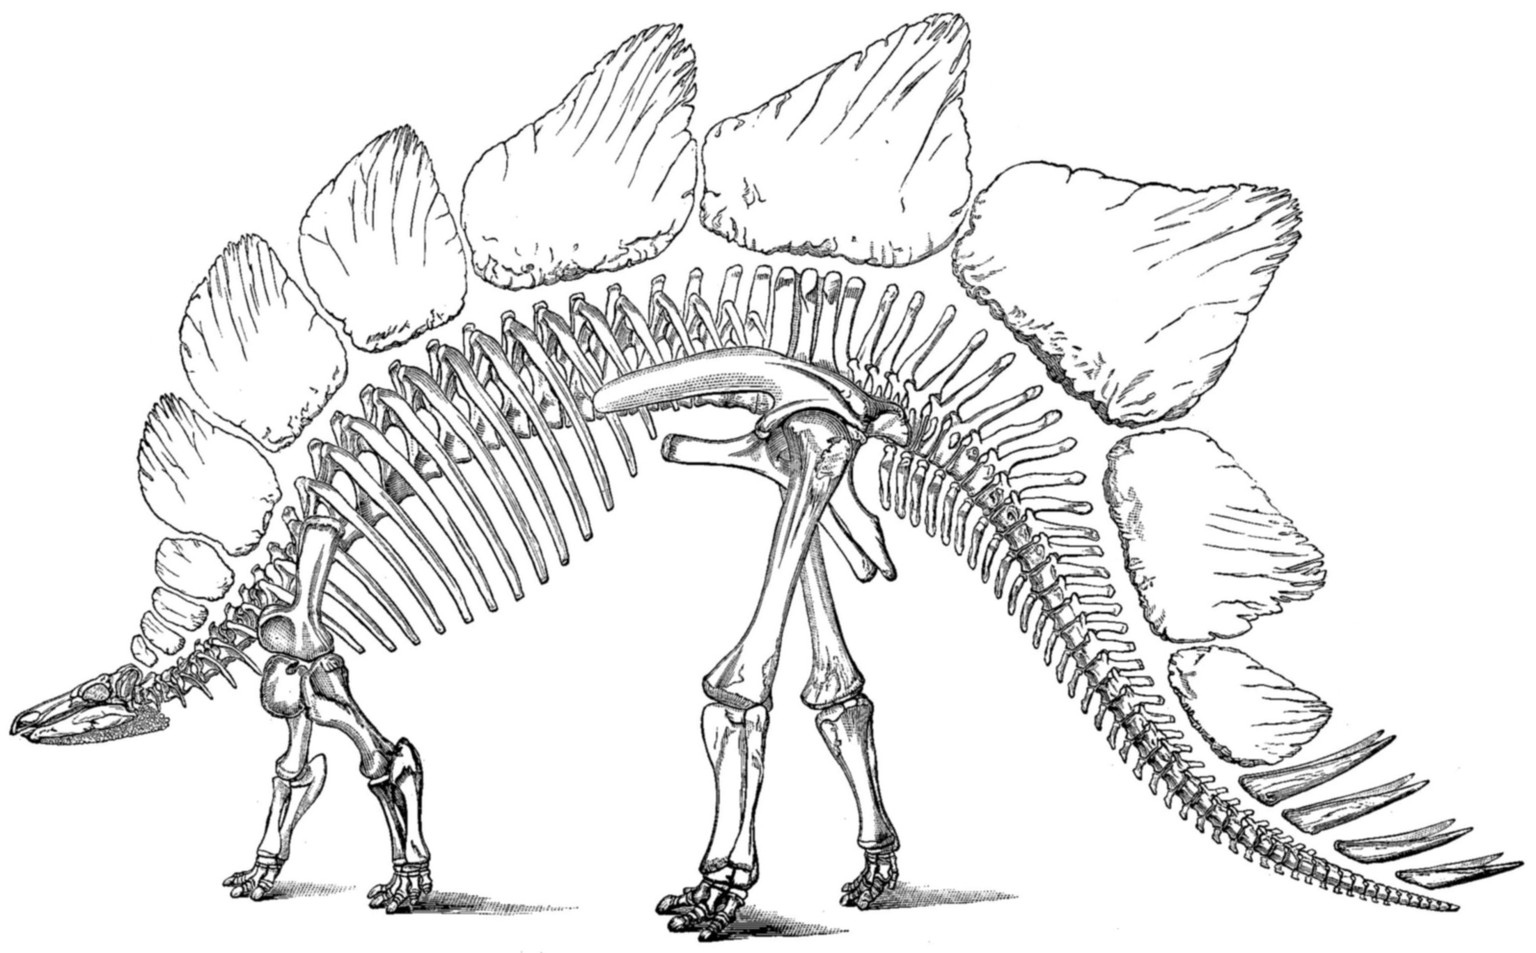 Marsh veröffentlichte 1891 das allererste vollständige Skelett eines Stegosaurus